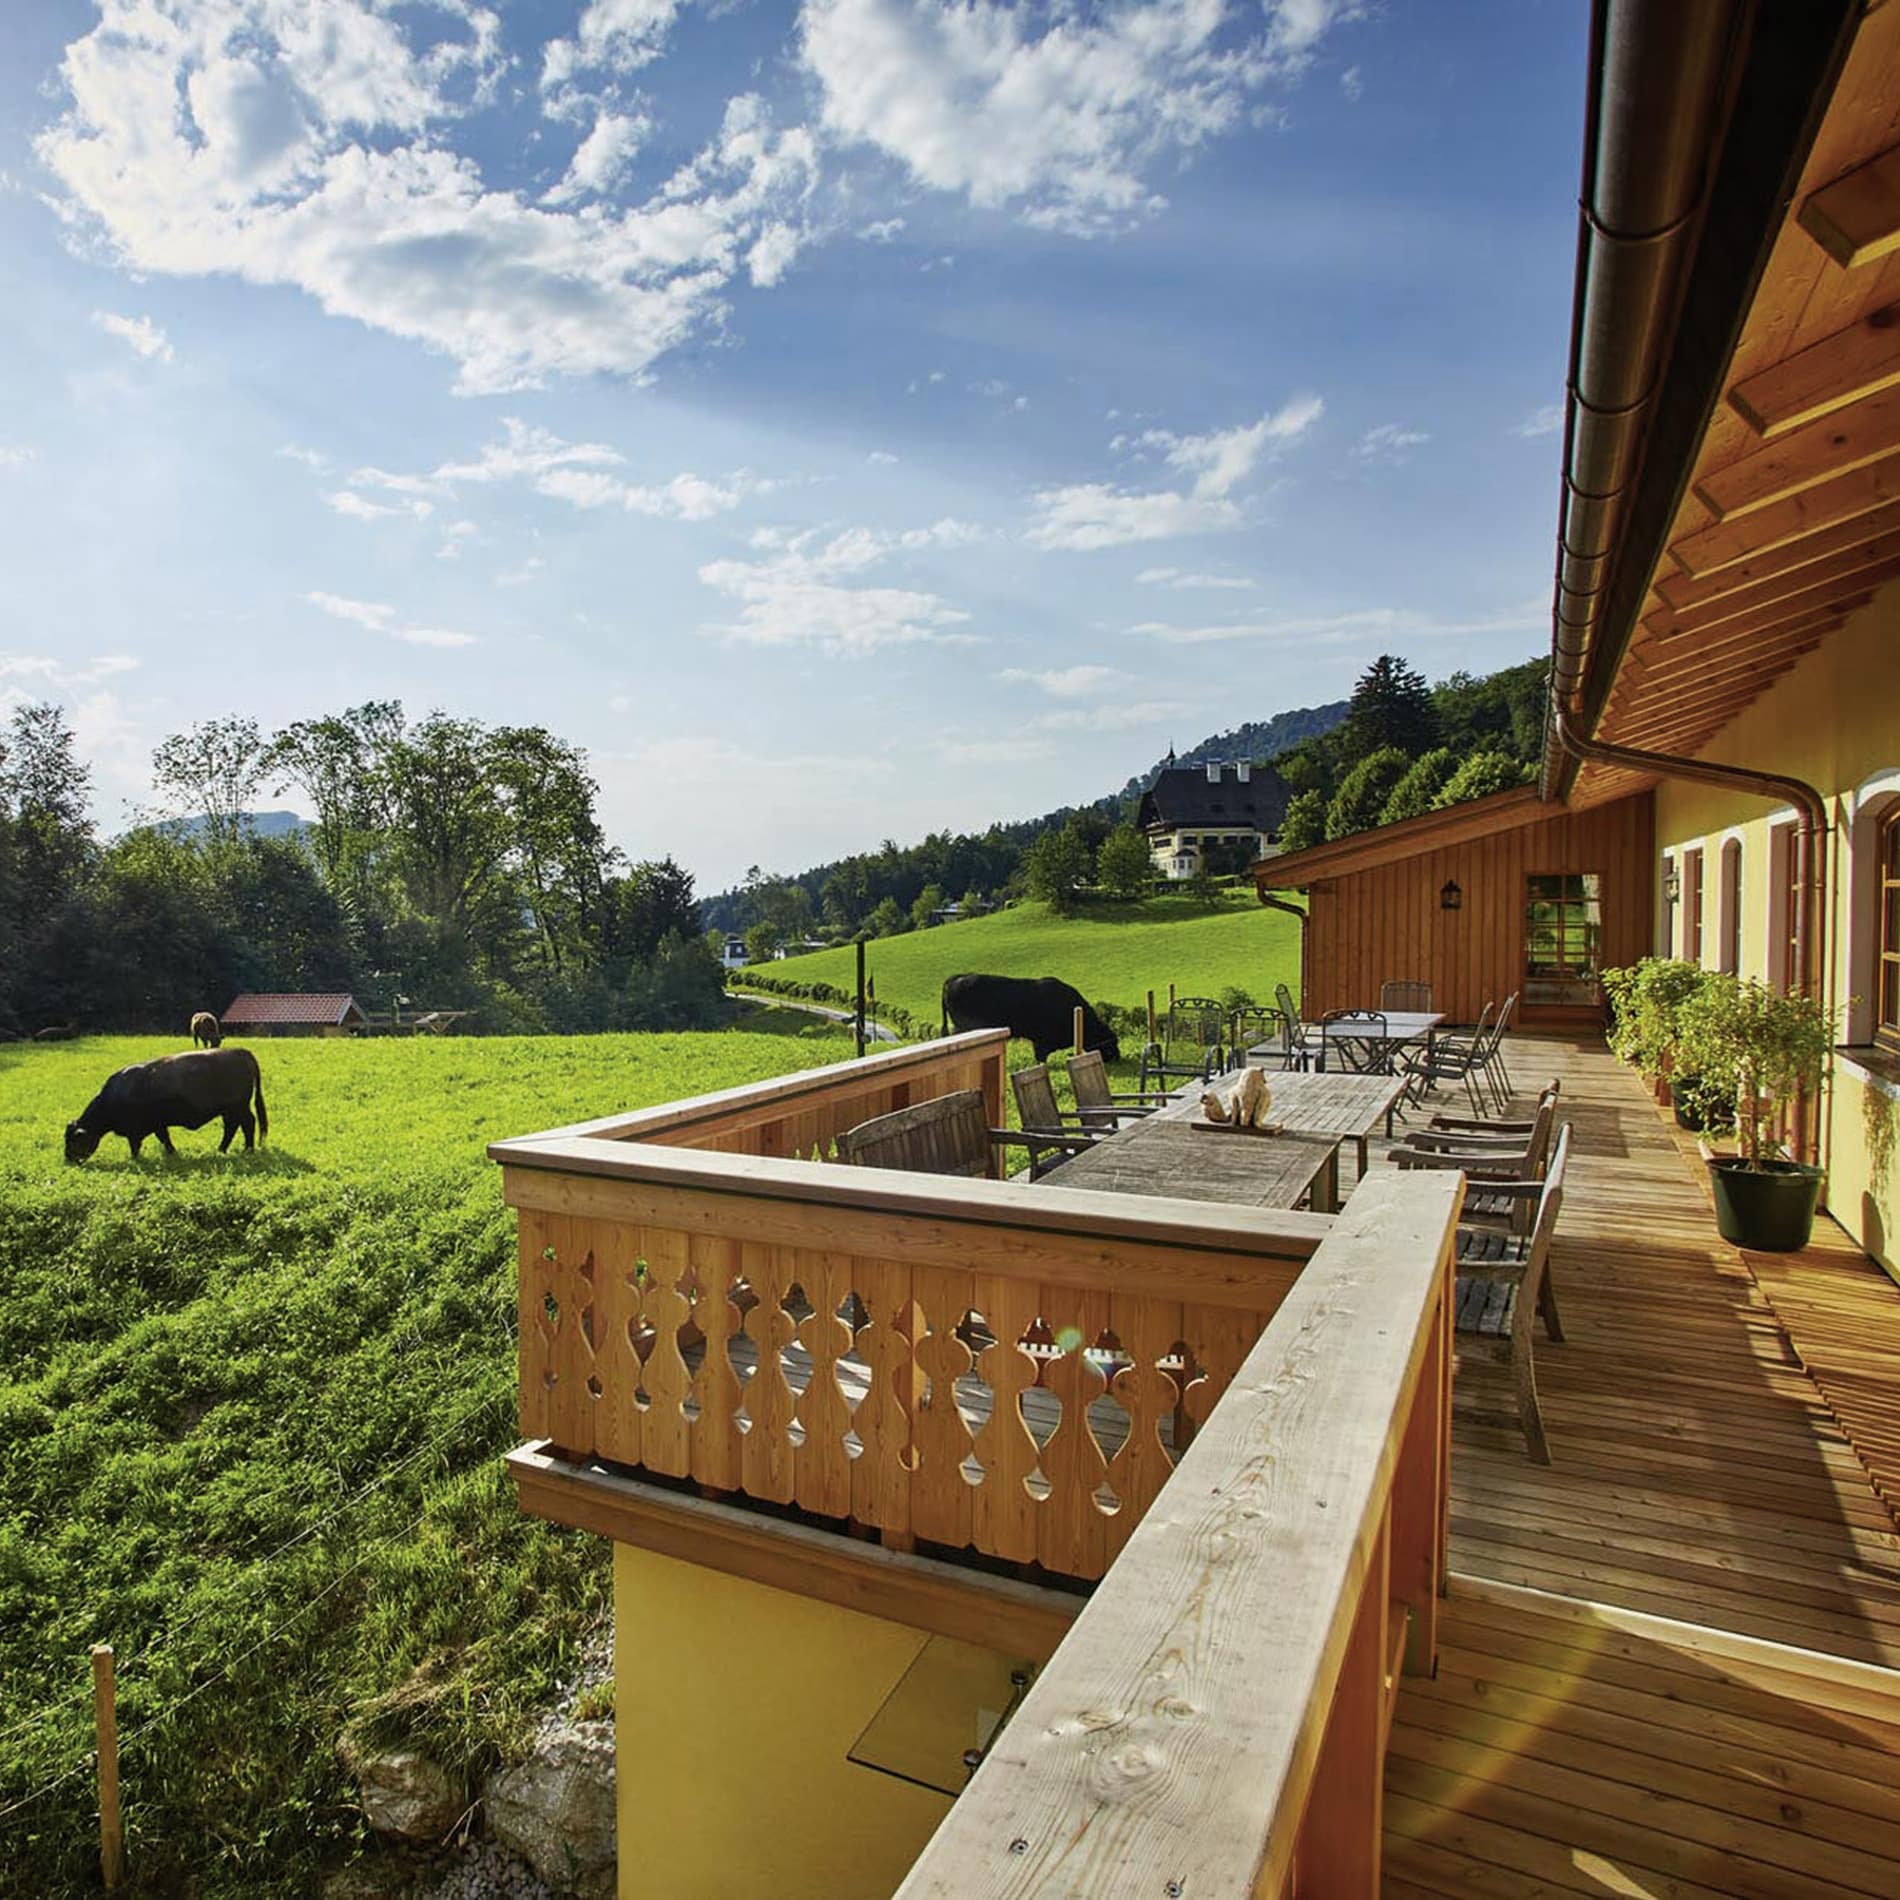 Die Terrasse der Ferienwohnung in einem Bauernhaus bei Salzburg bietet Sicht auf weidende Kühe auf grünen Wiesen